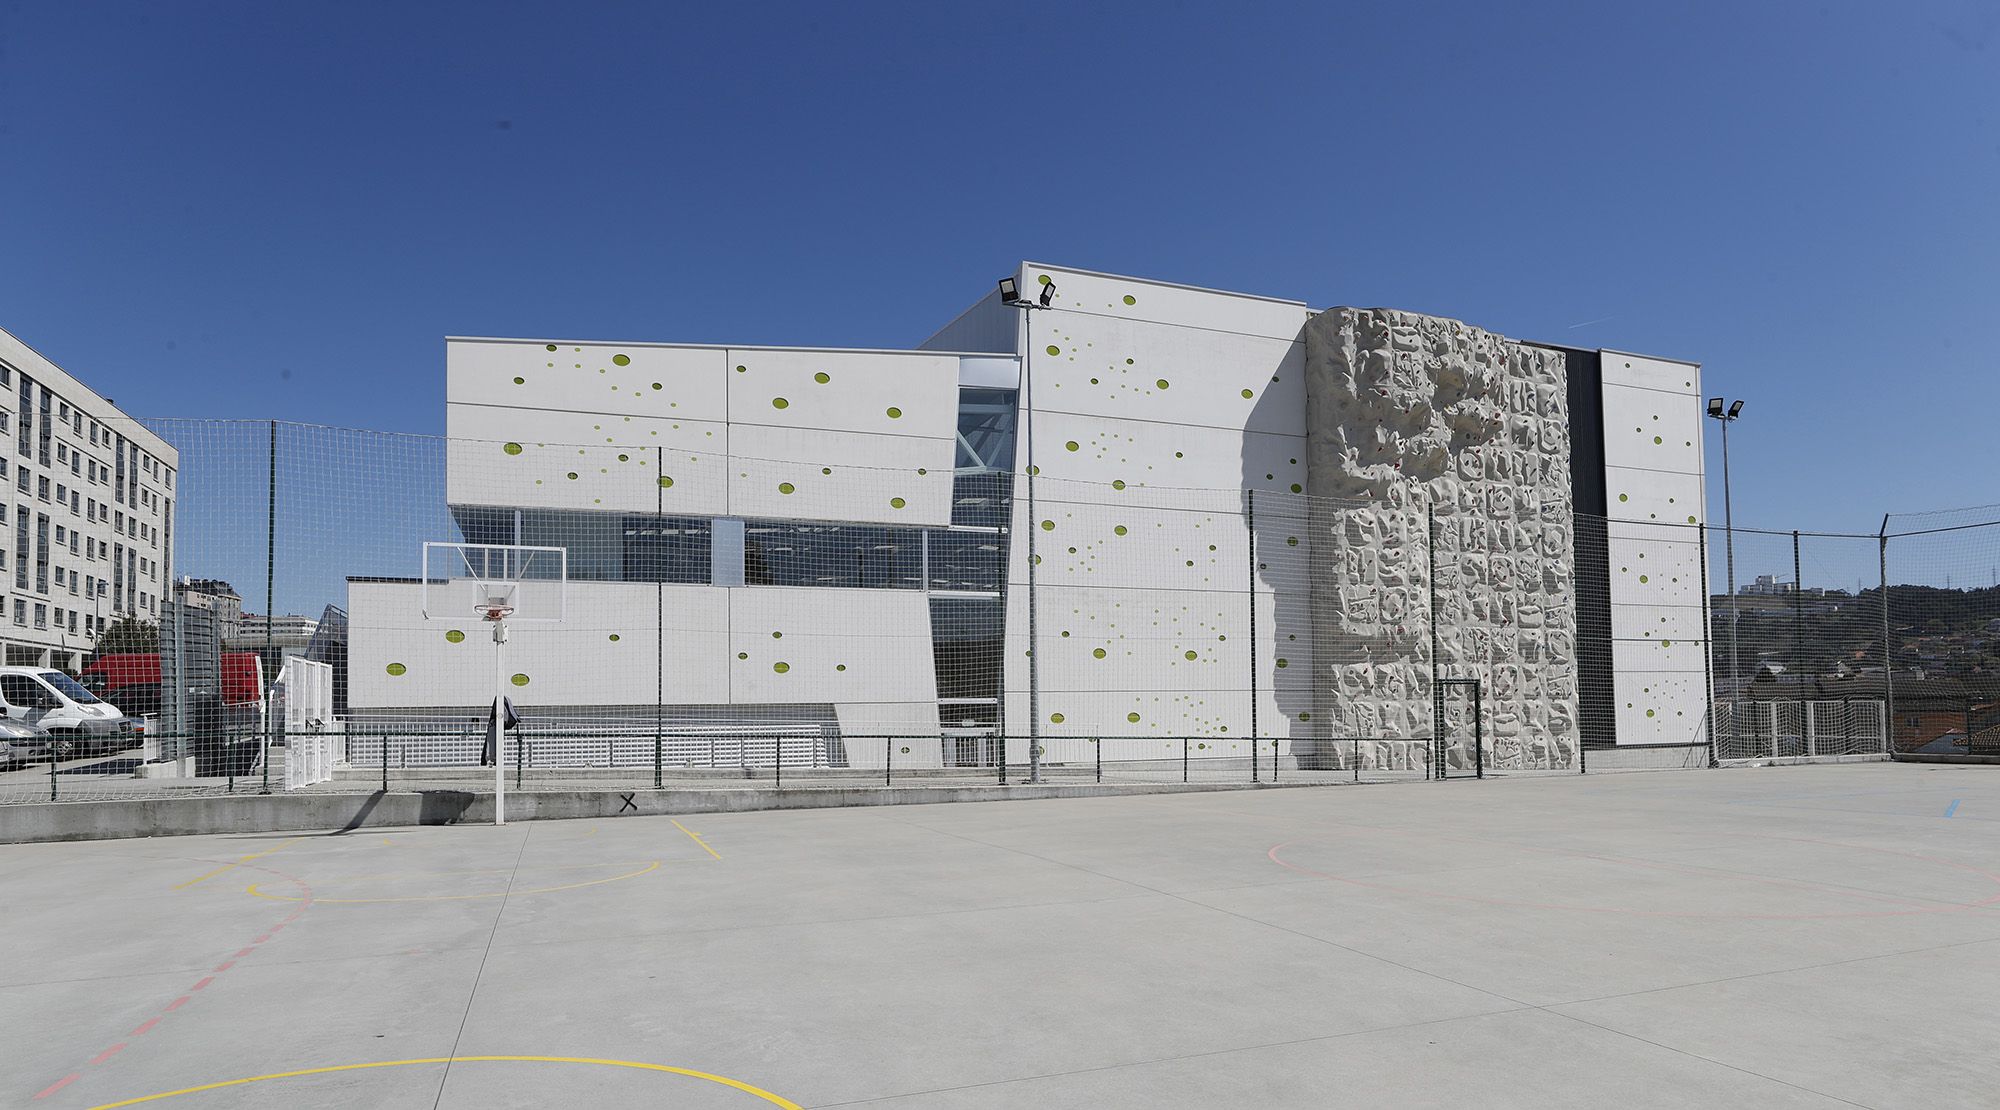 Vigo estrenará nuevo pabellón en Quirós con dos rocódromos y gimnasio